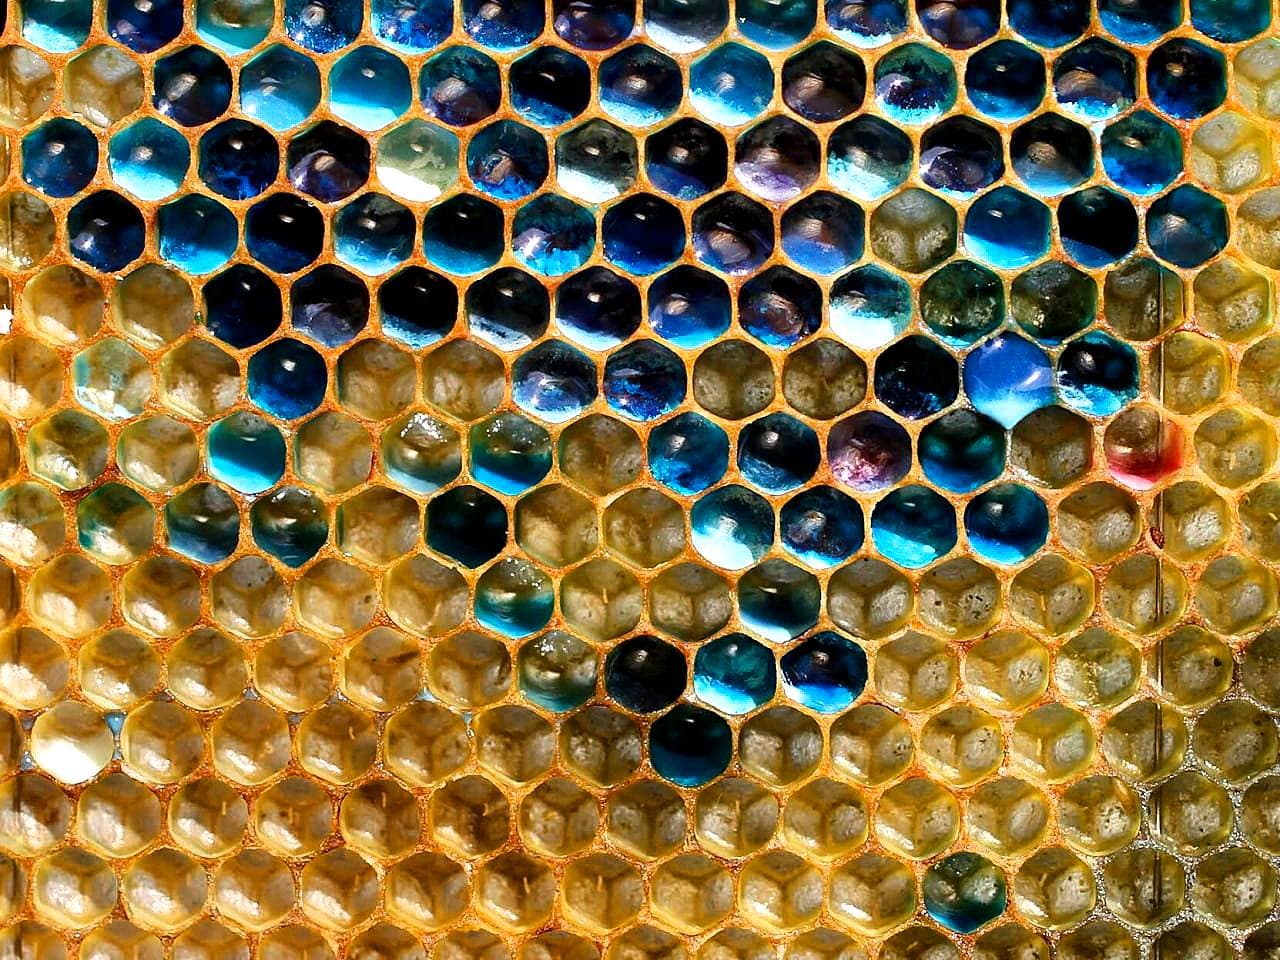 Пчелы могут производить цветной мед? - Загадка!